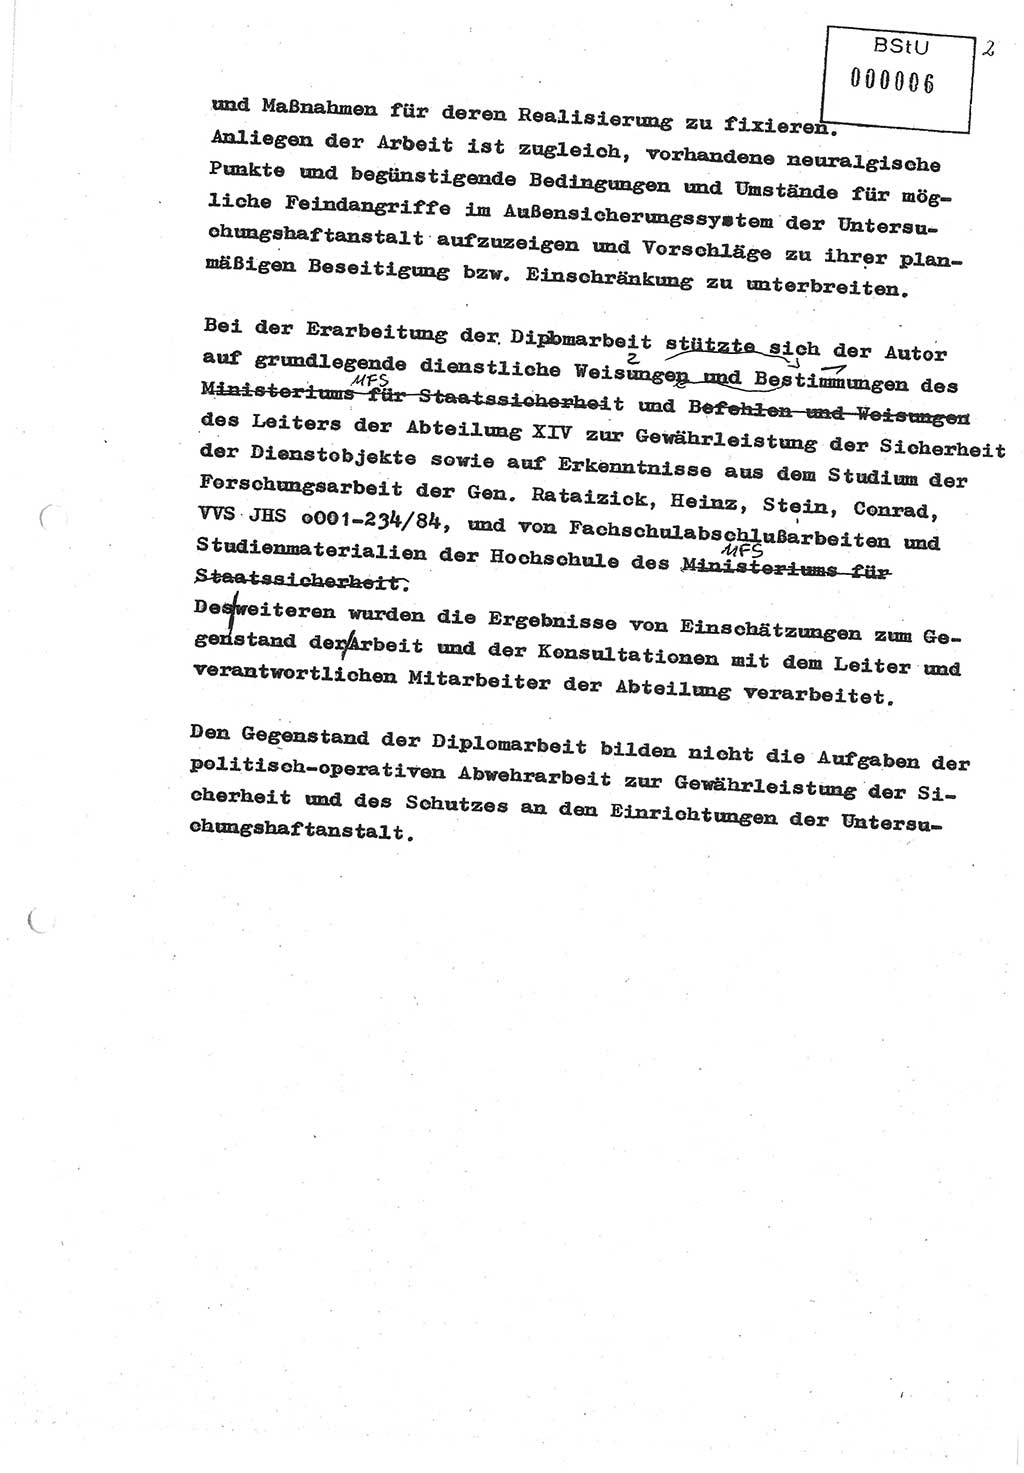 Diplomarbeit (Entwurf) Oberleutnant Peter Parke (Abt. ⅩⅣ), Ministerium für Staatssicherheit (MfS) [Deutsche Demokratische Republik (DDR)], Juristische Hochschule (JHS), Geheime Verschlußsache (GVS) o001-98/86, Potsdam 1986, Seite 6 (Dipl.-Arb. MfS DDR JHS GVS o001-98/86 1986, S. 6)